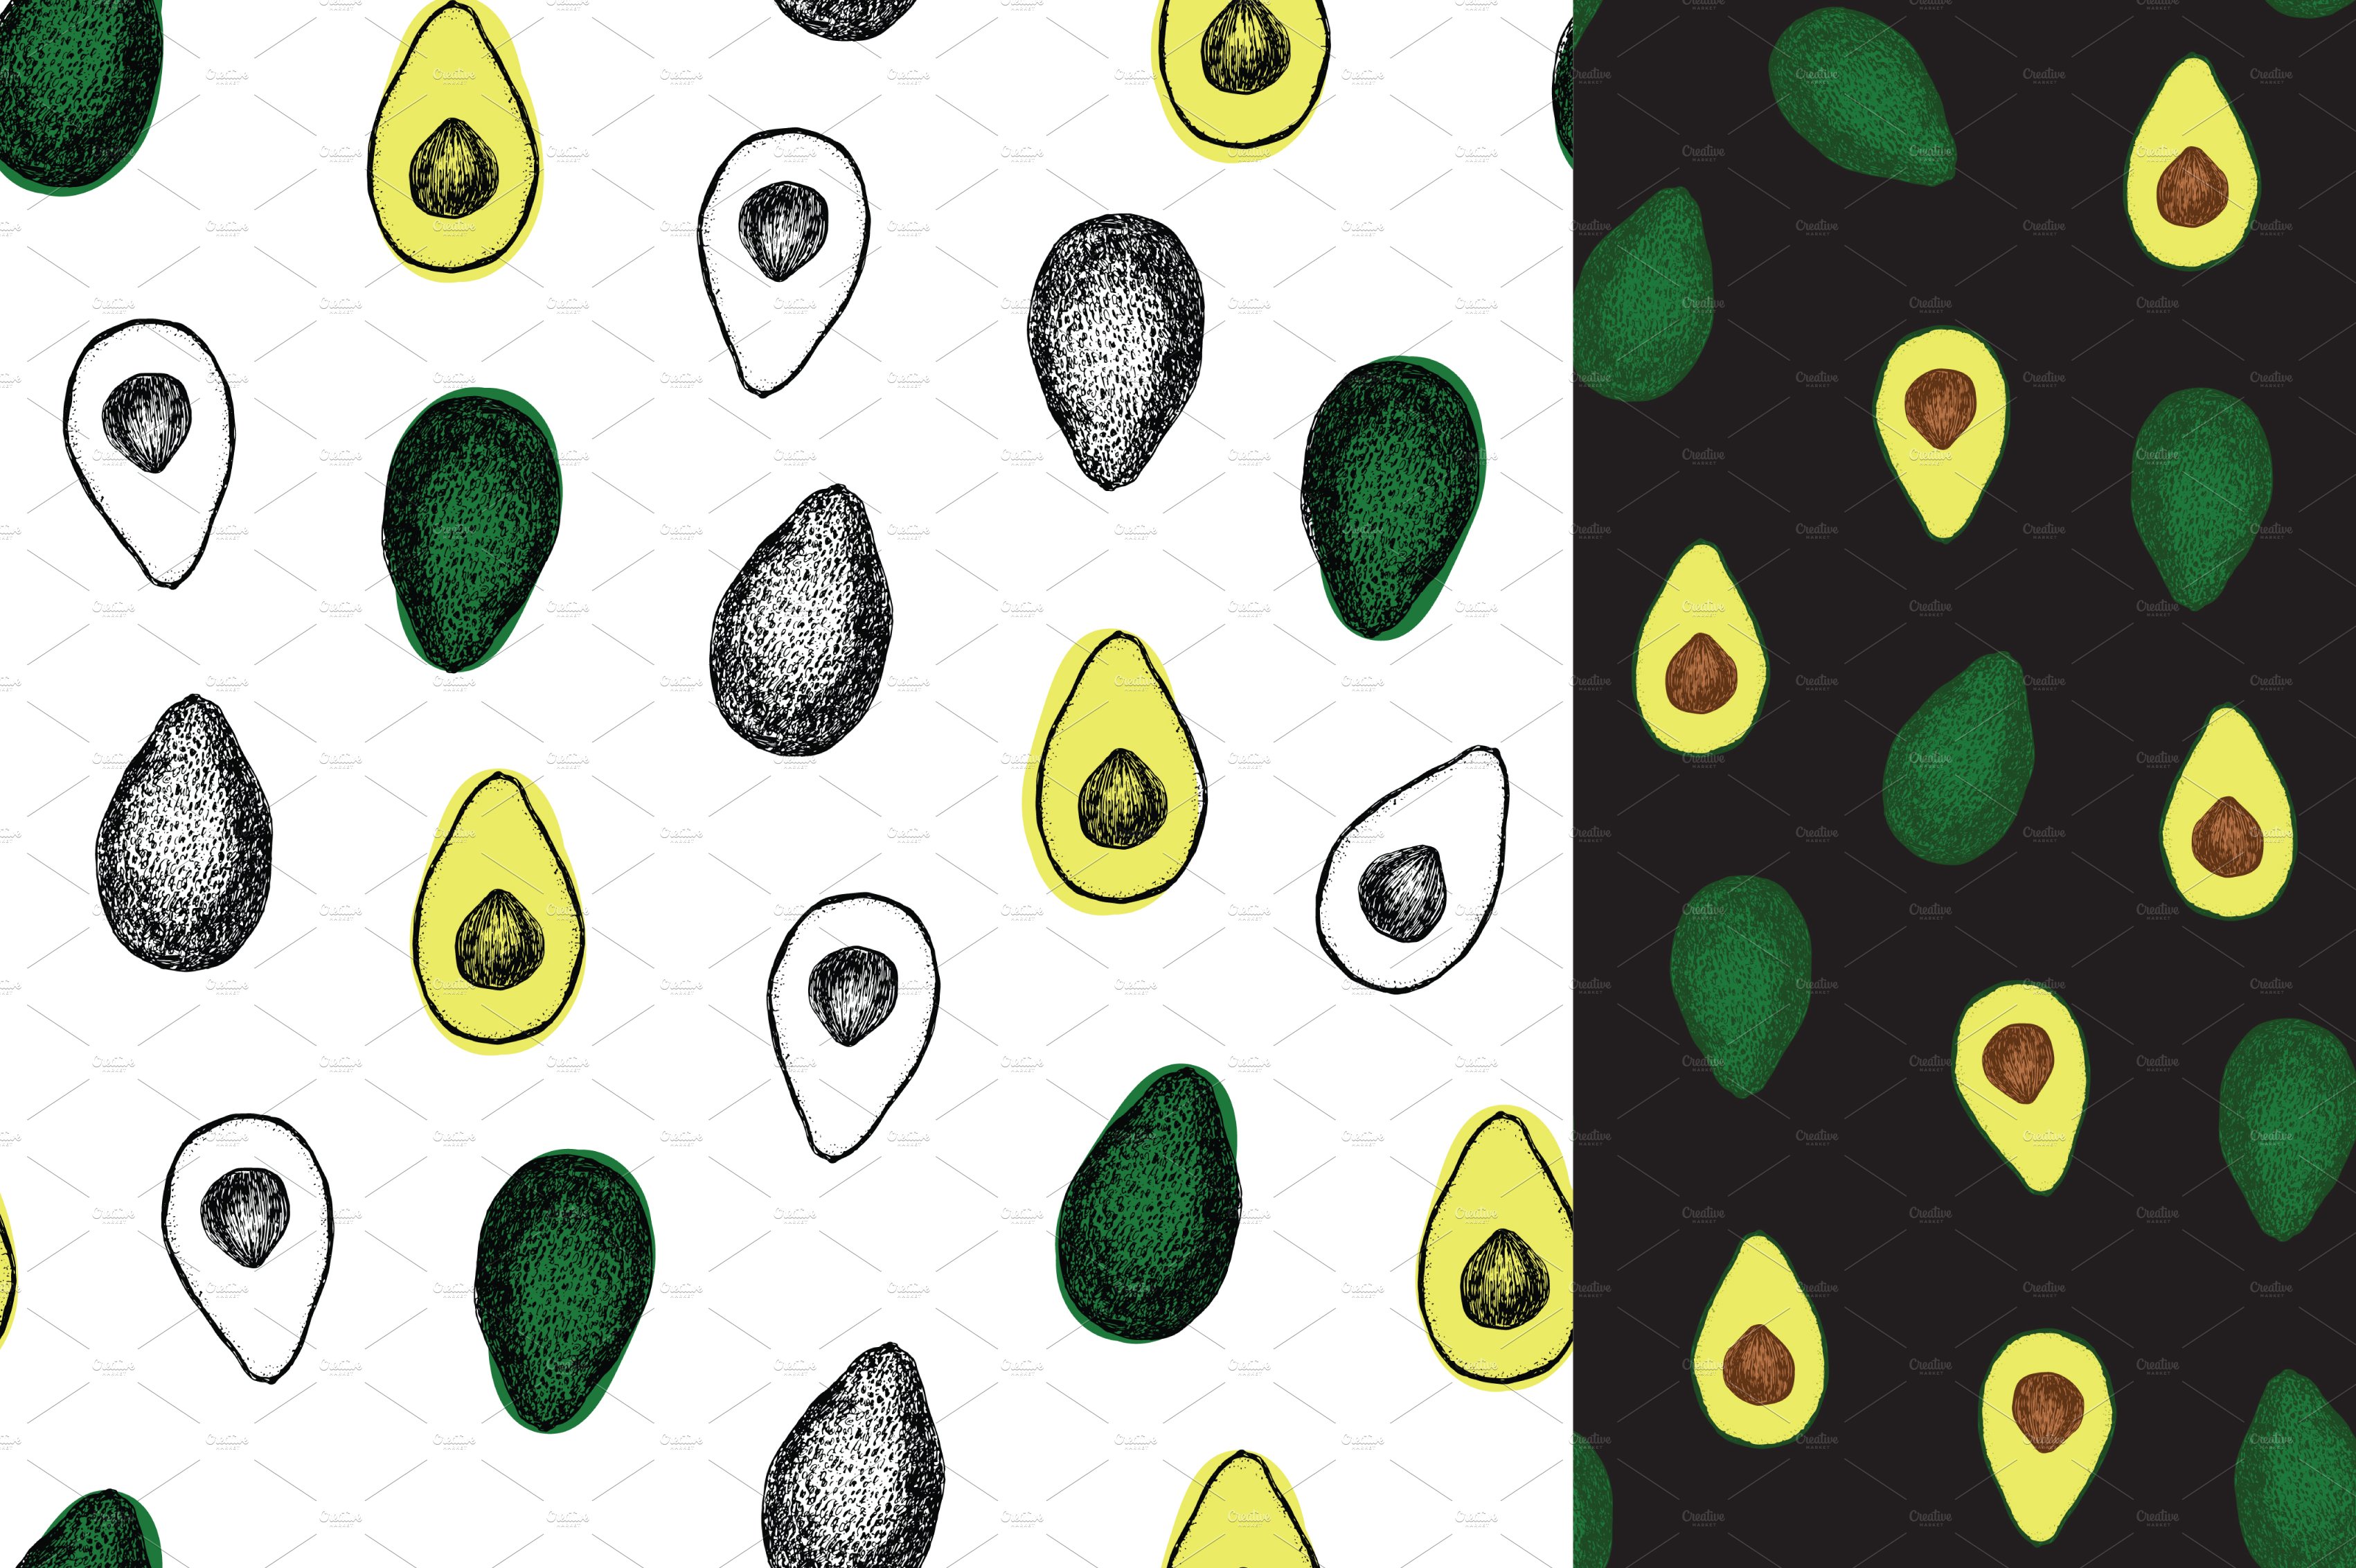 Avocado cover image.